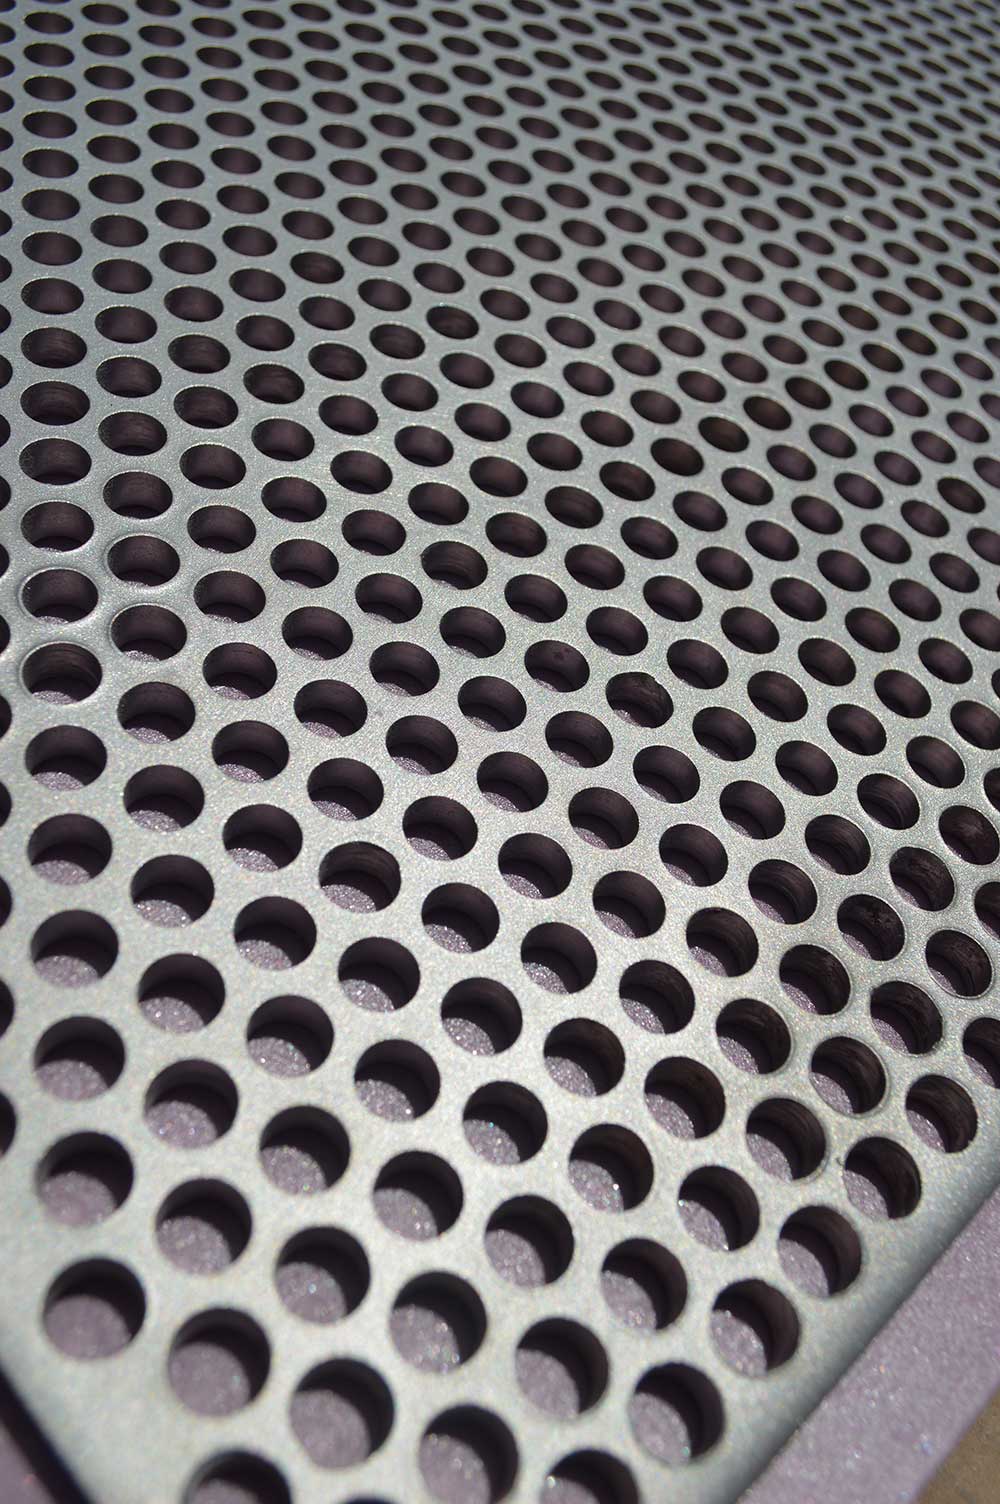 Perforated metal